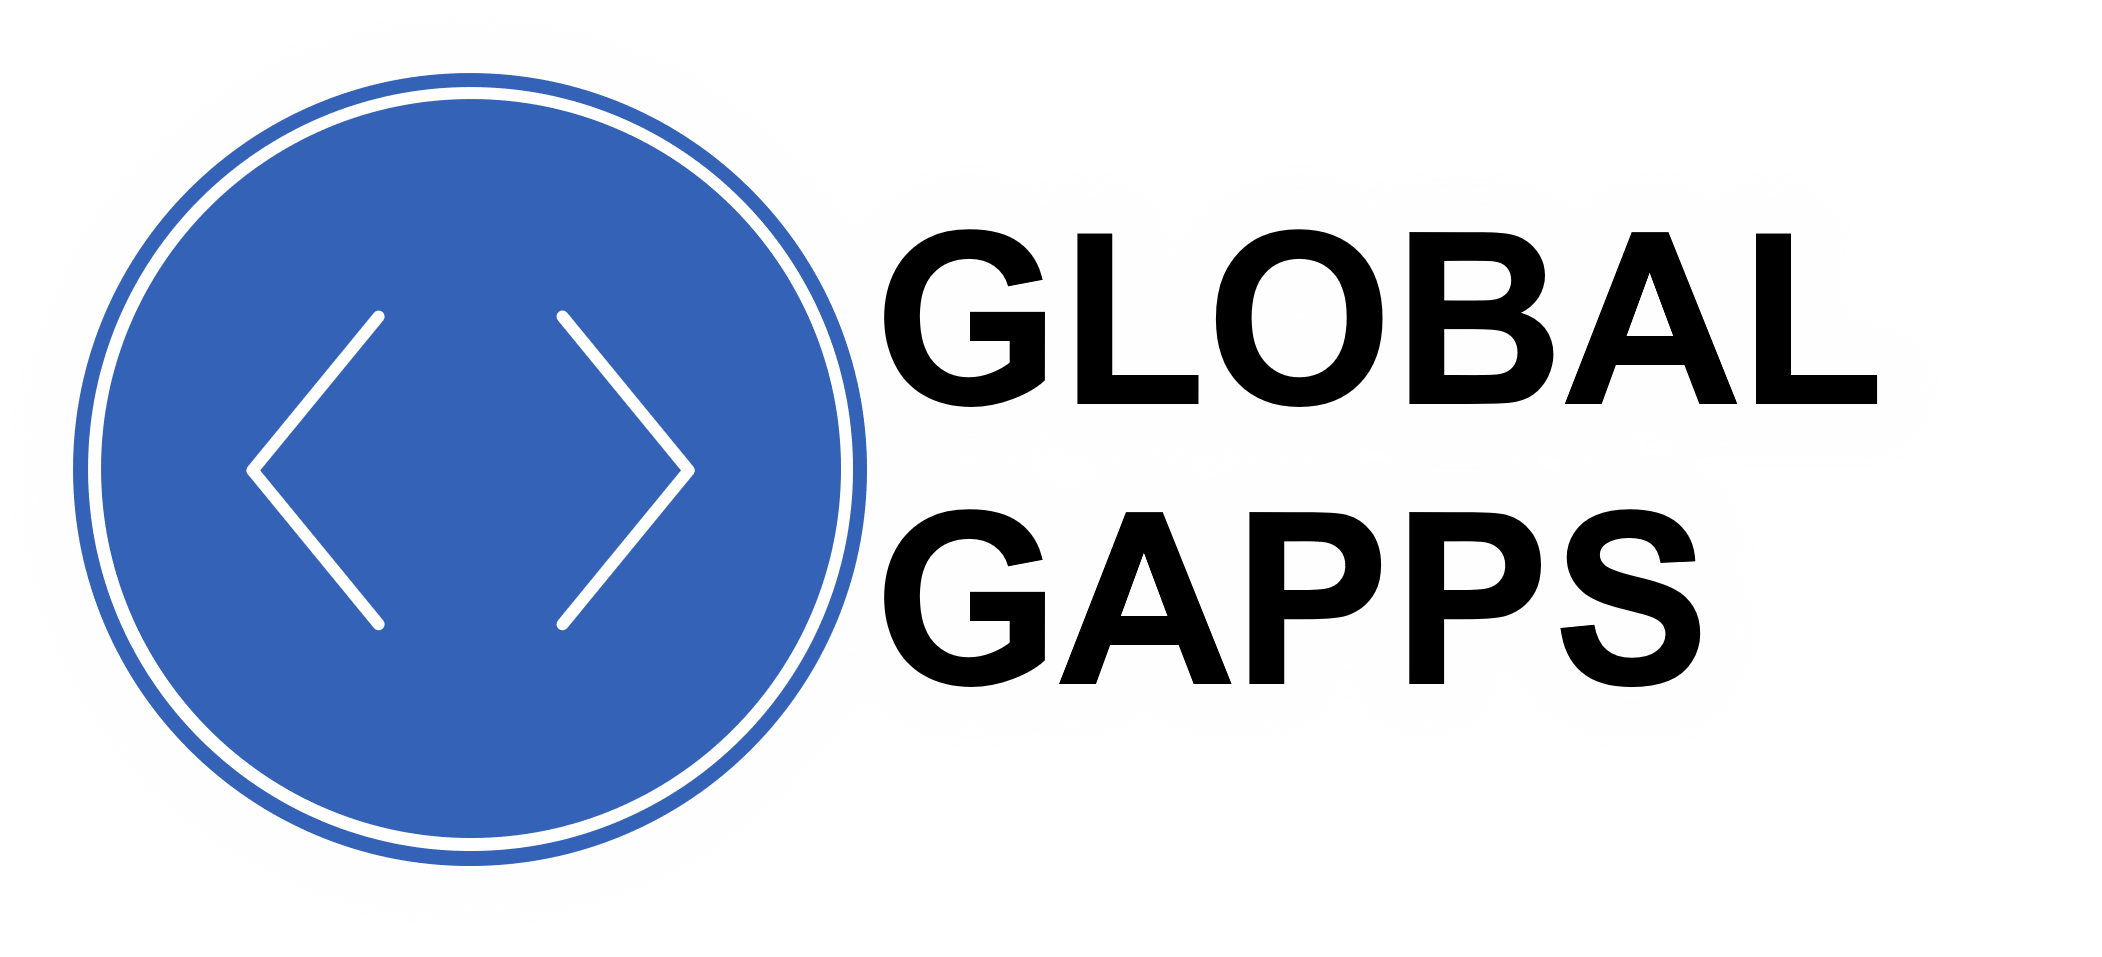 Global Gapps